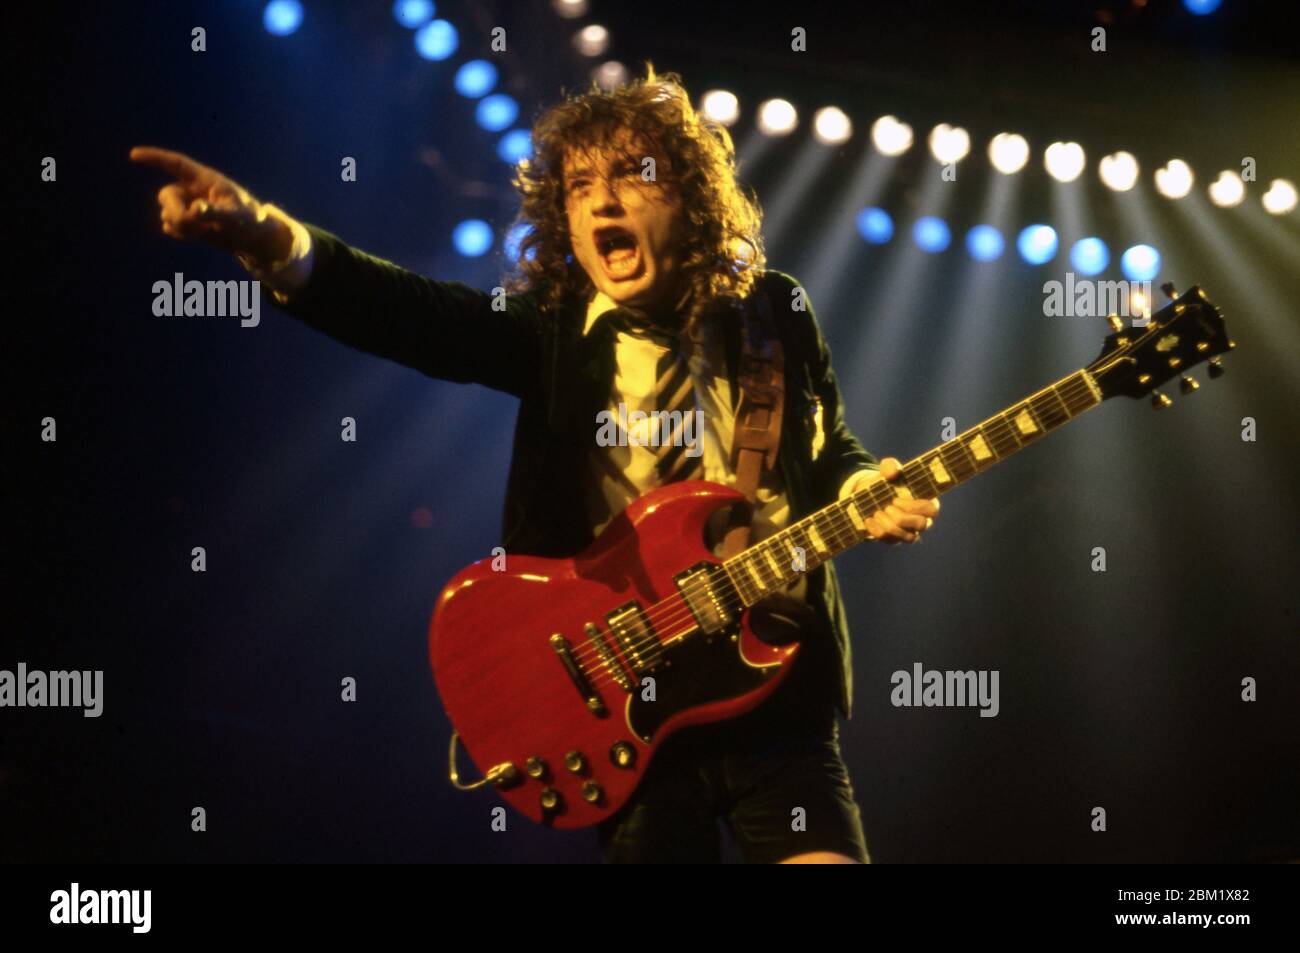 medida Orbita Médico DETROIT - 17 DE NOVIEMBRE: Angus Young, guitarrista principal de AC/DC, con  su icónico uniforme de colegialas británicas y tocando su Gibson SG rojo,  actúa durante la gira de la Flick of